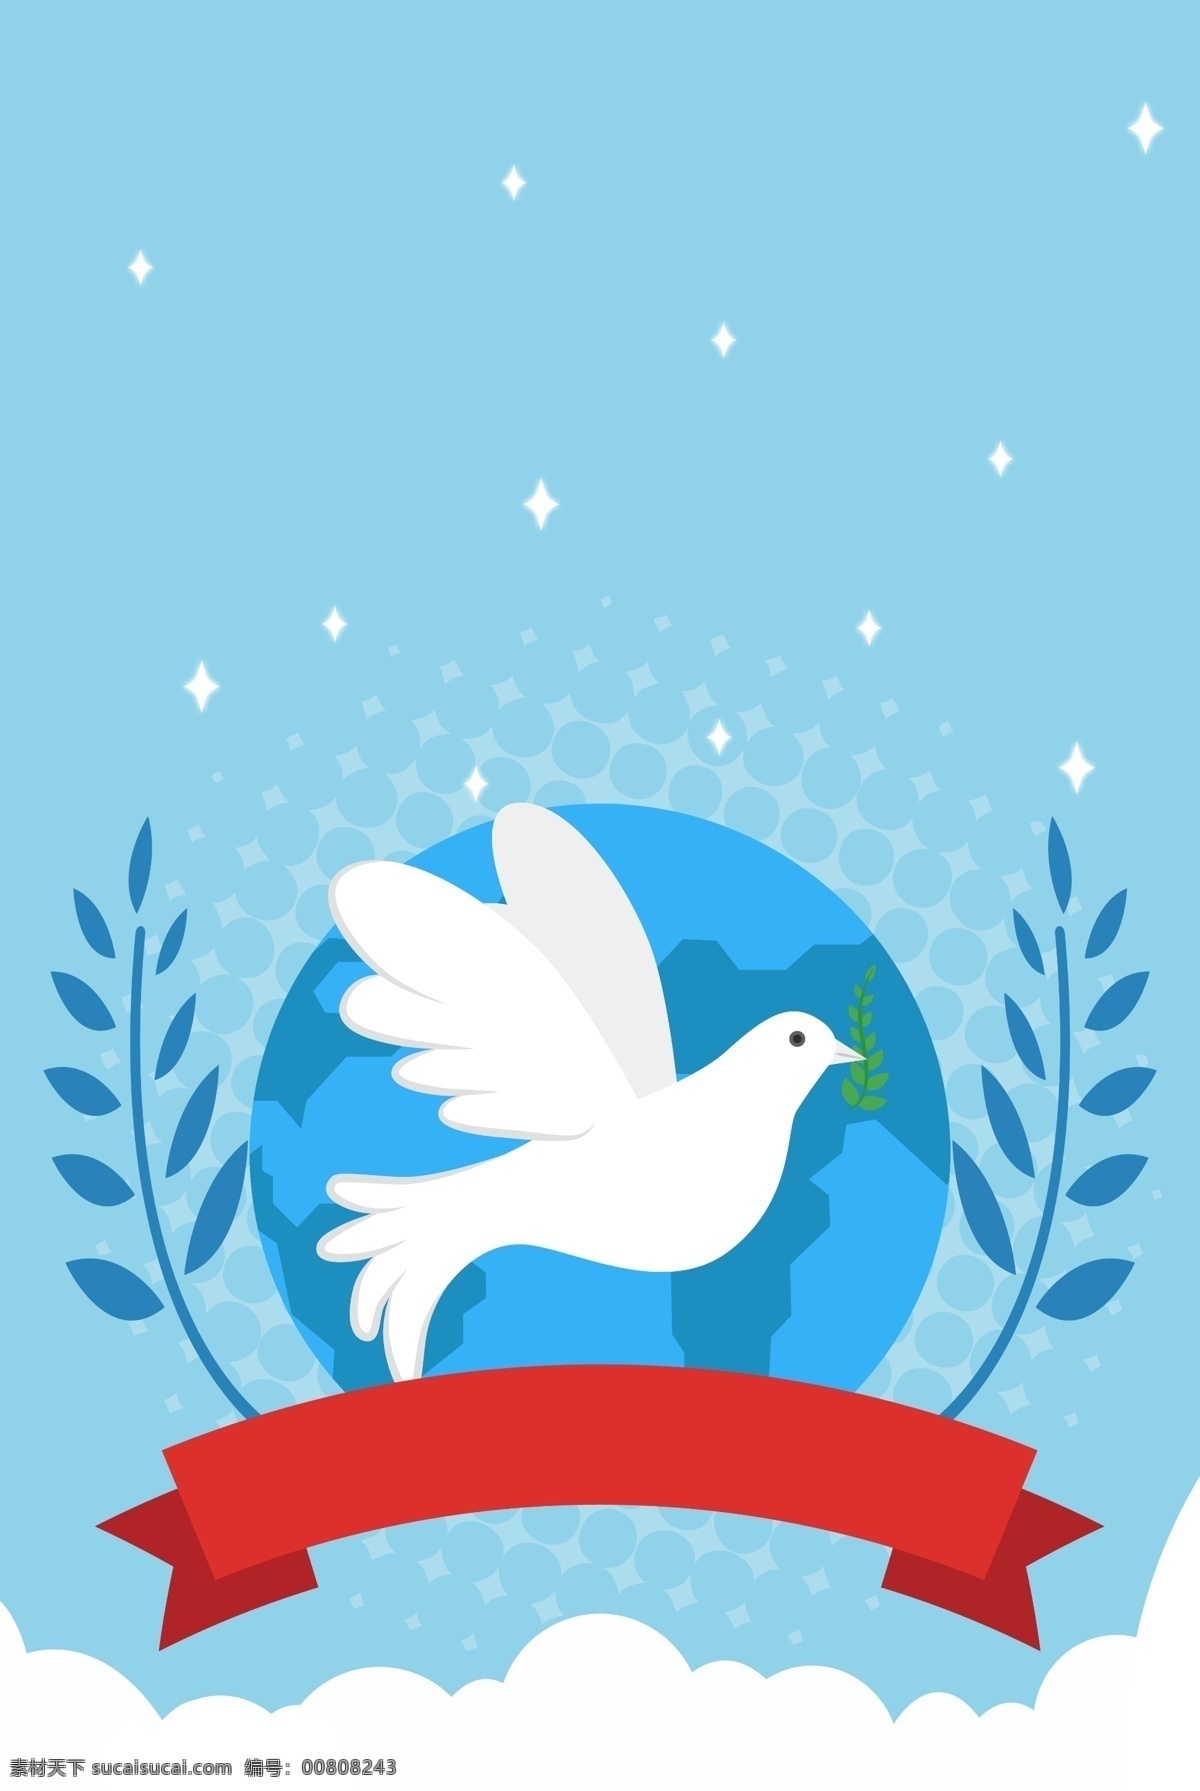 世界 平日 地球 和平鸽 扁平 风格 海报 世界和平日 橄榄枝 蓝色 宣传 免战 矢量 背景 简约 卡通 叶子 星光